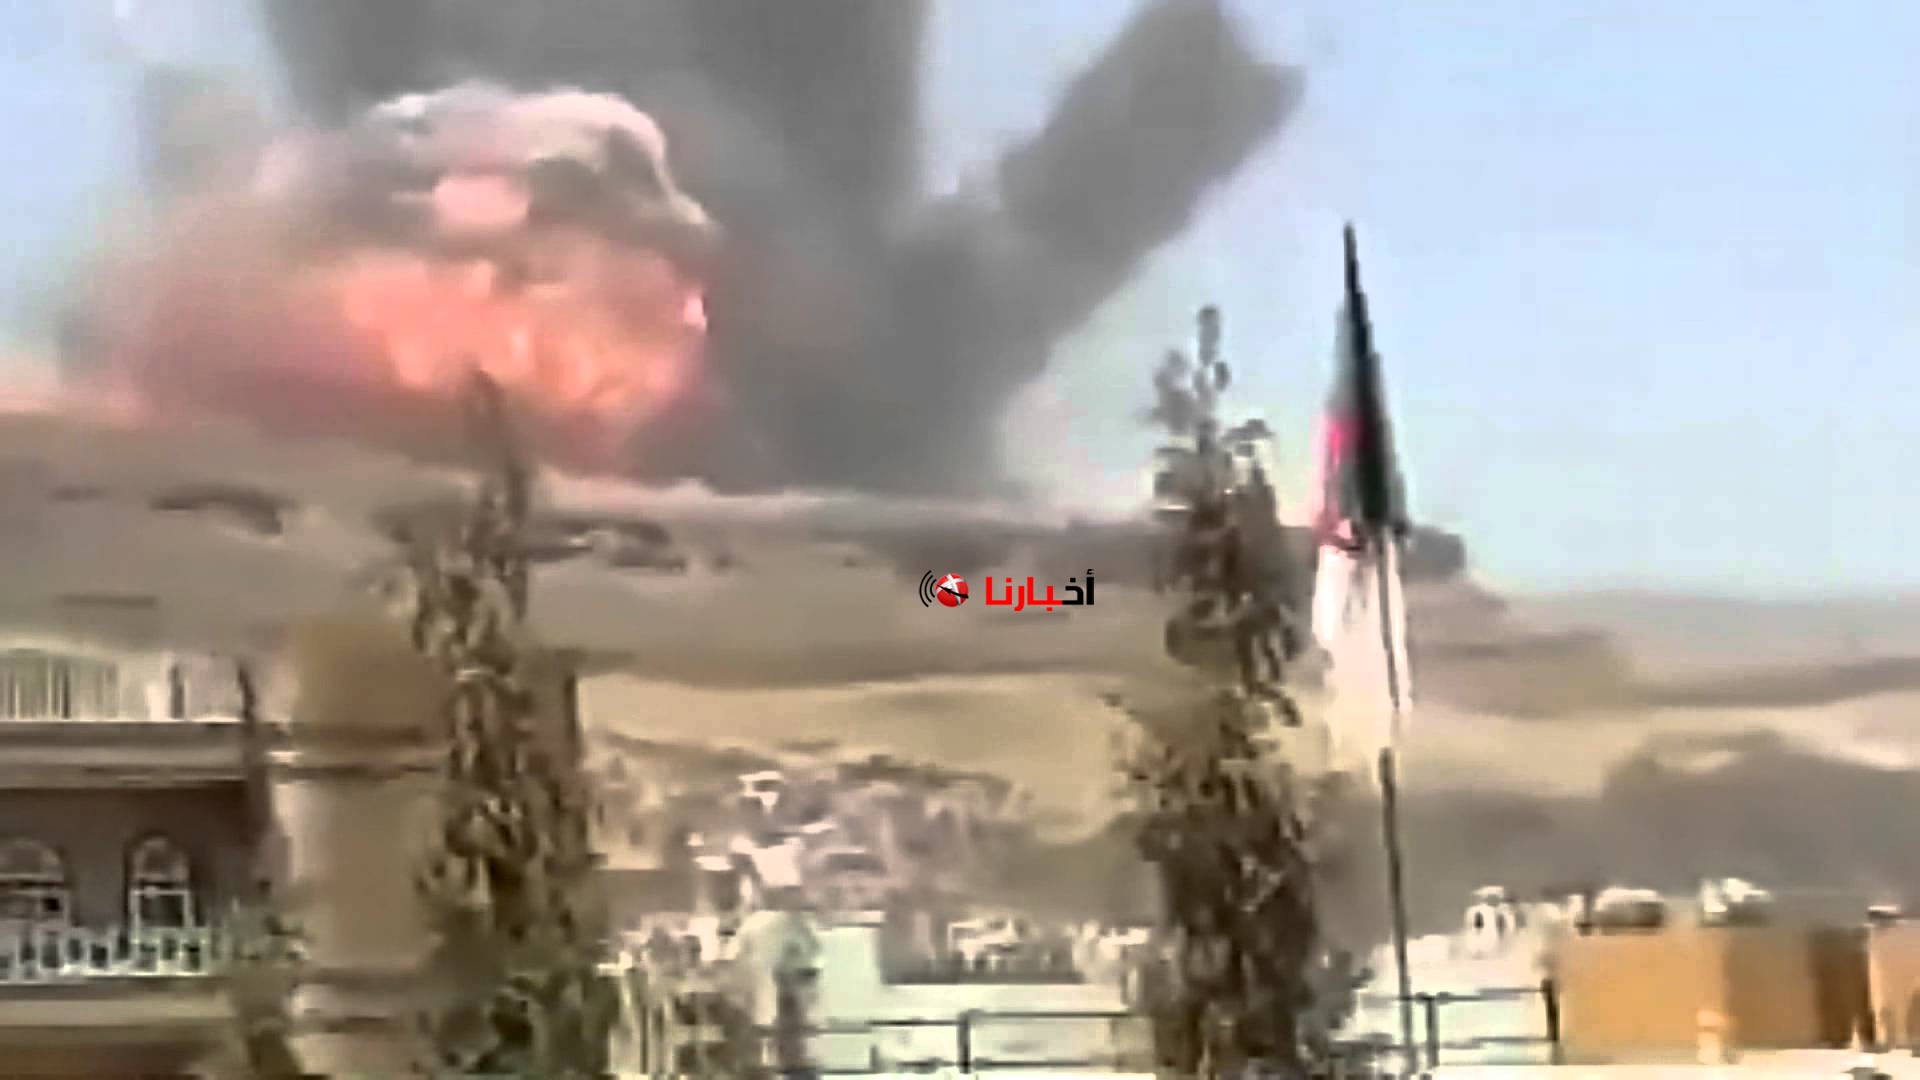 اخبار اليمن اليوم 2 - 9 - 2015 انفجار صاروخ باليمن امس